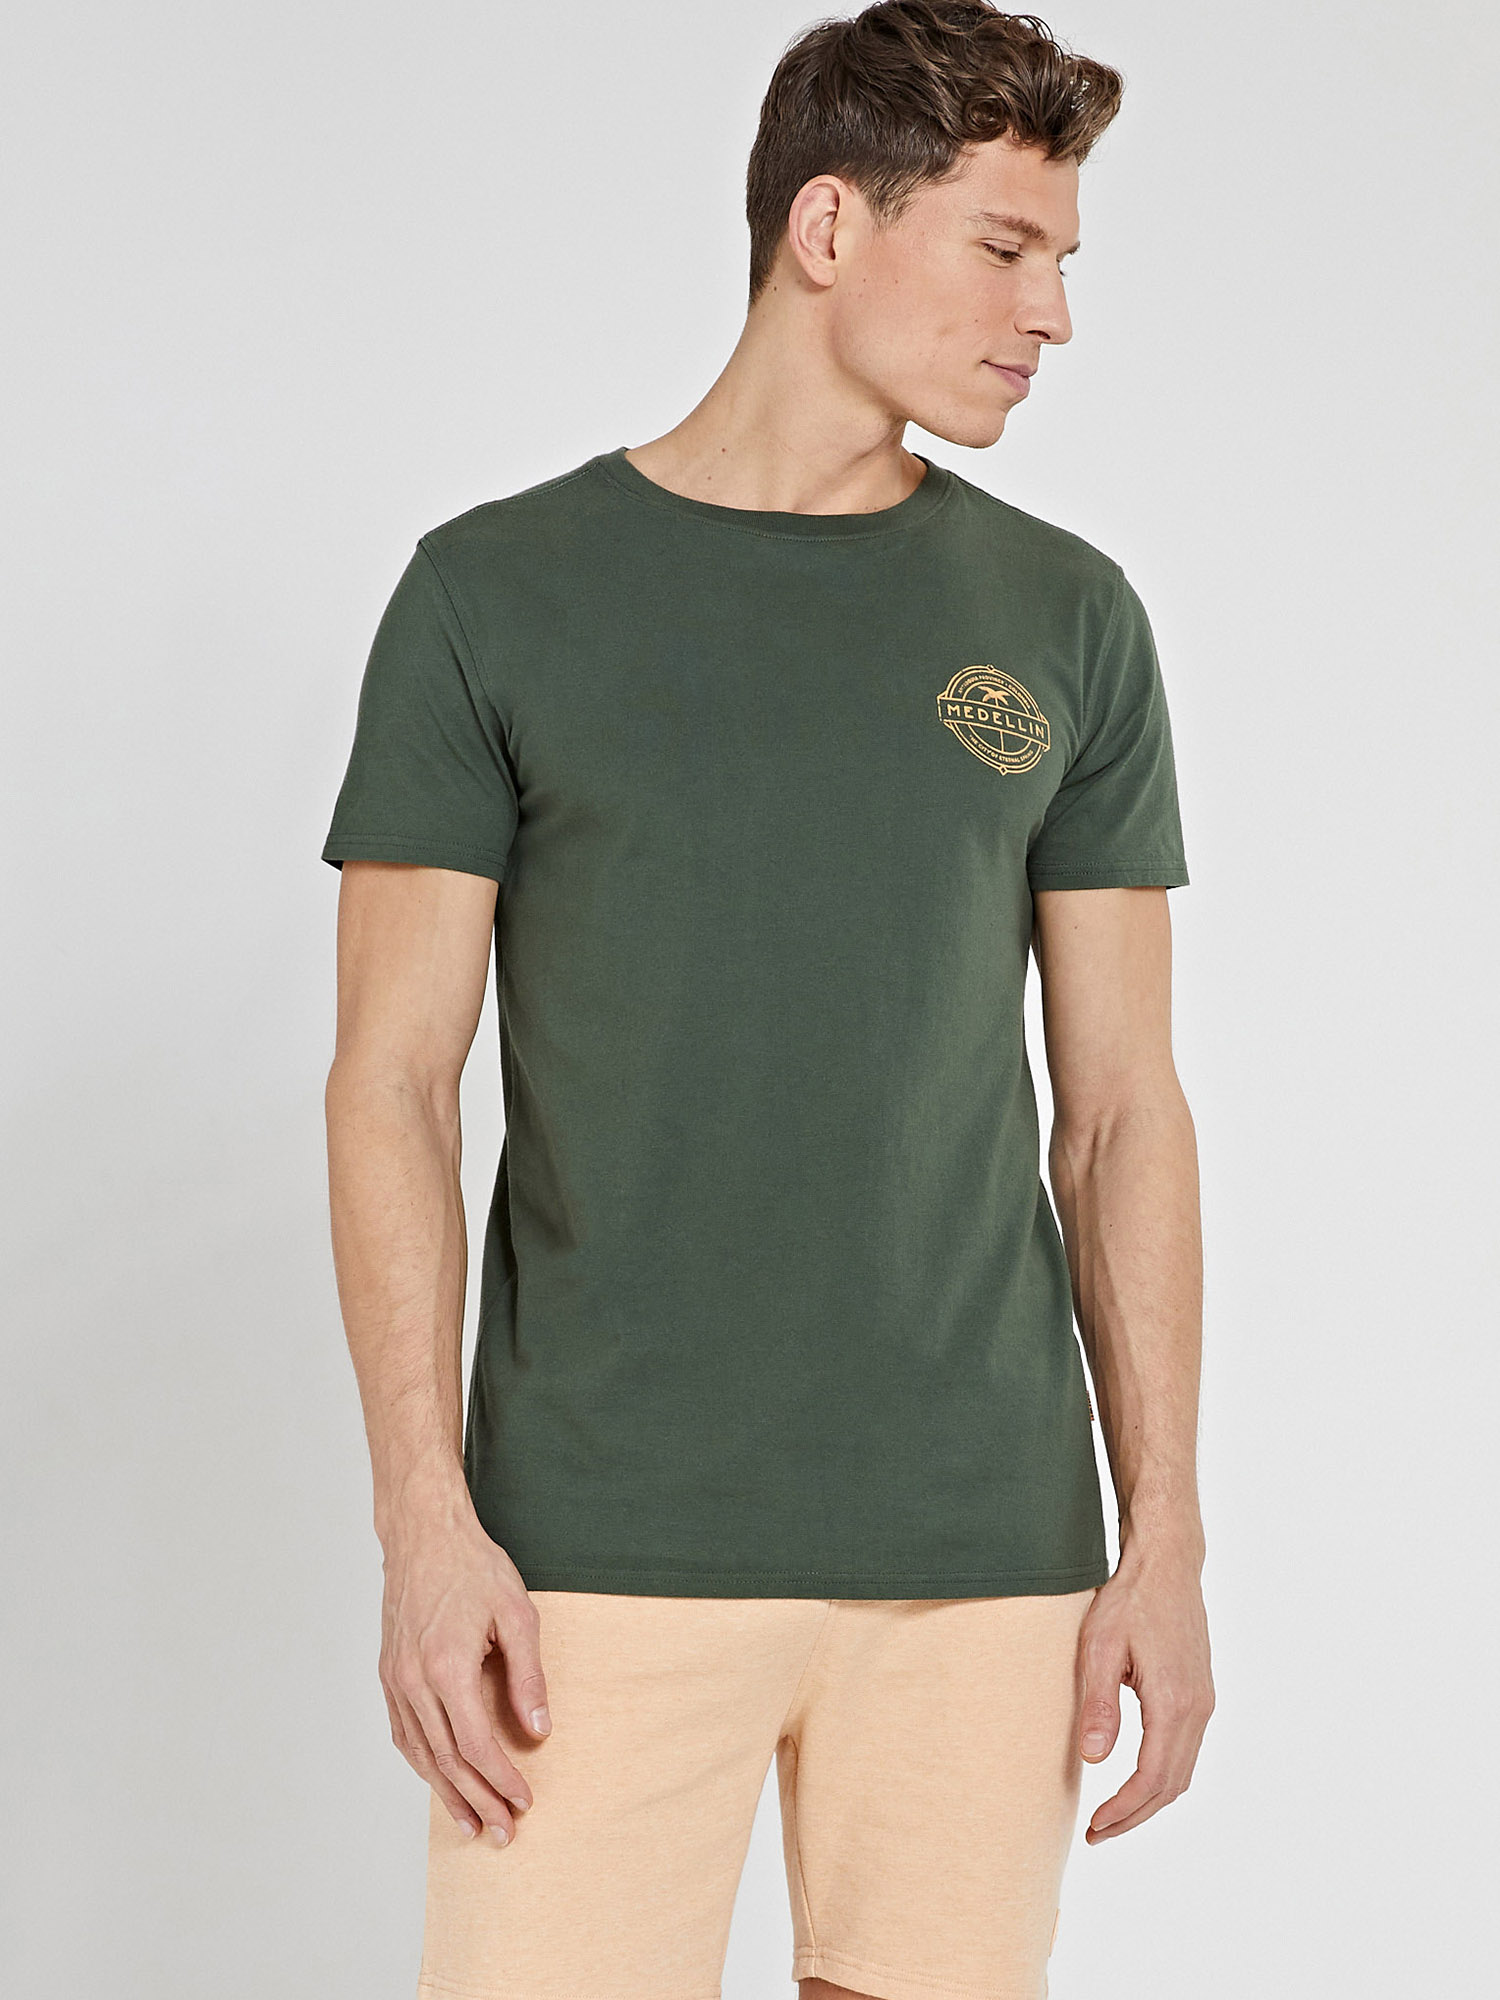 Koszulki Odzież Shiwi Koszulka w kolorze Zielonym 